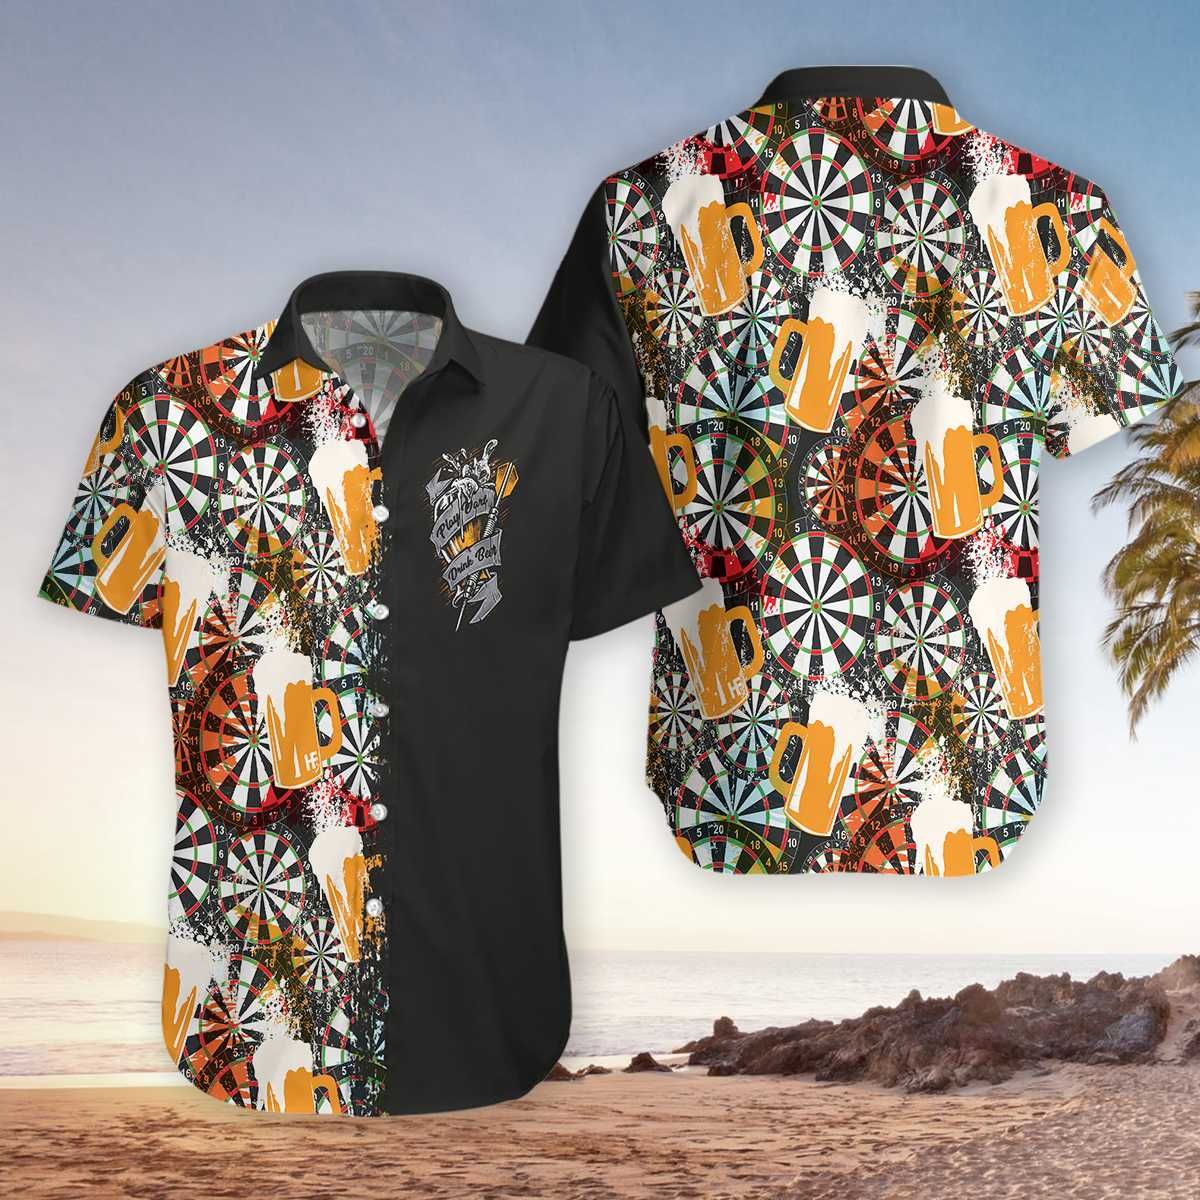 Felacia [Hawaii Shirt] Play Darts With Drink Beer Hawaiian Aloha Shirts-ZX2329